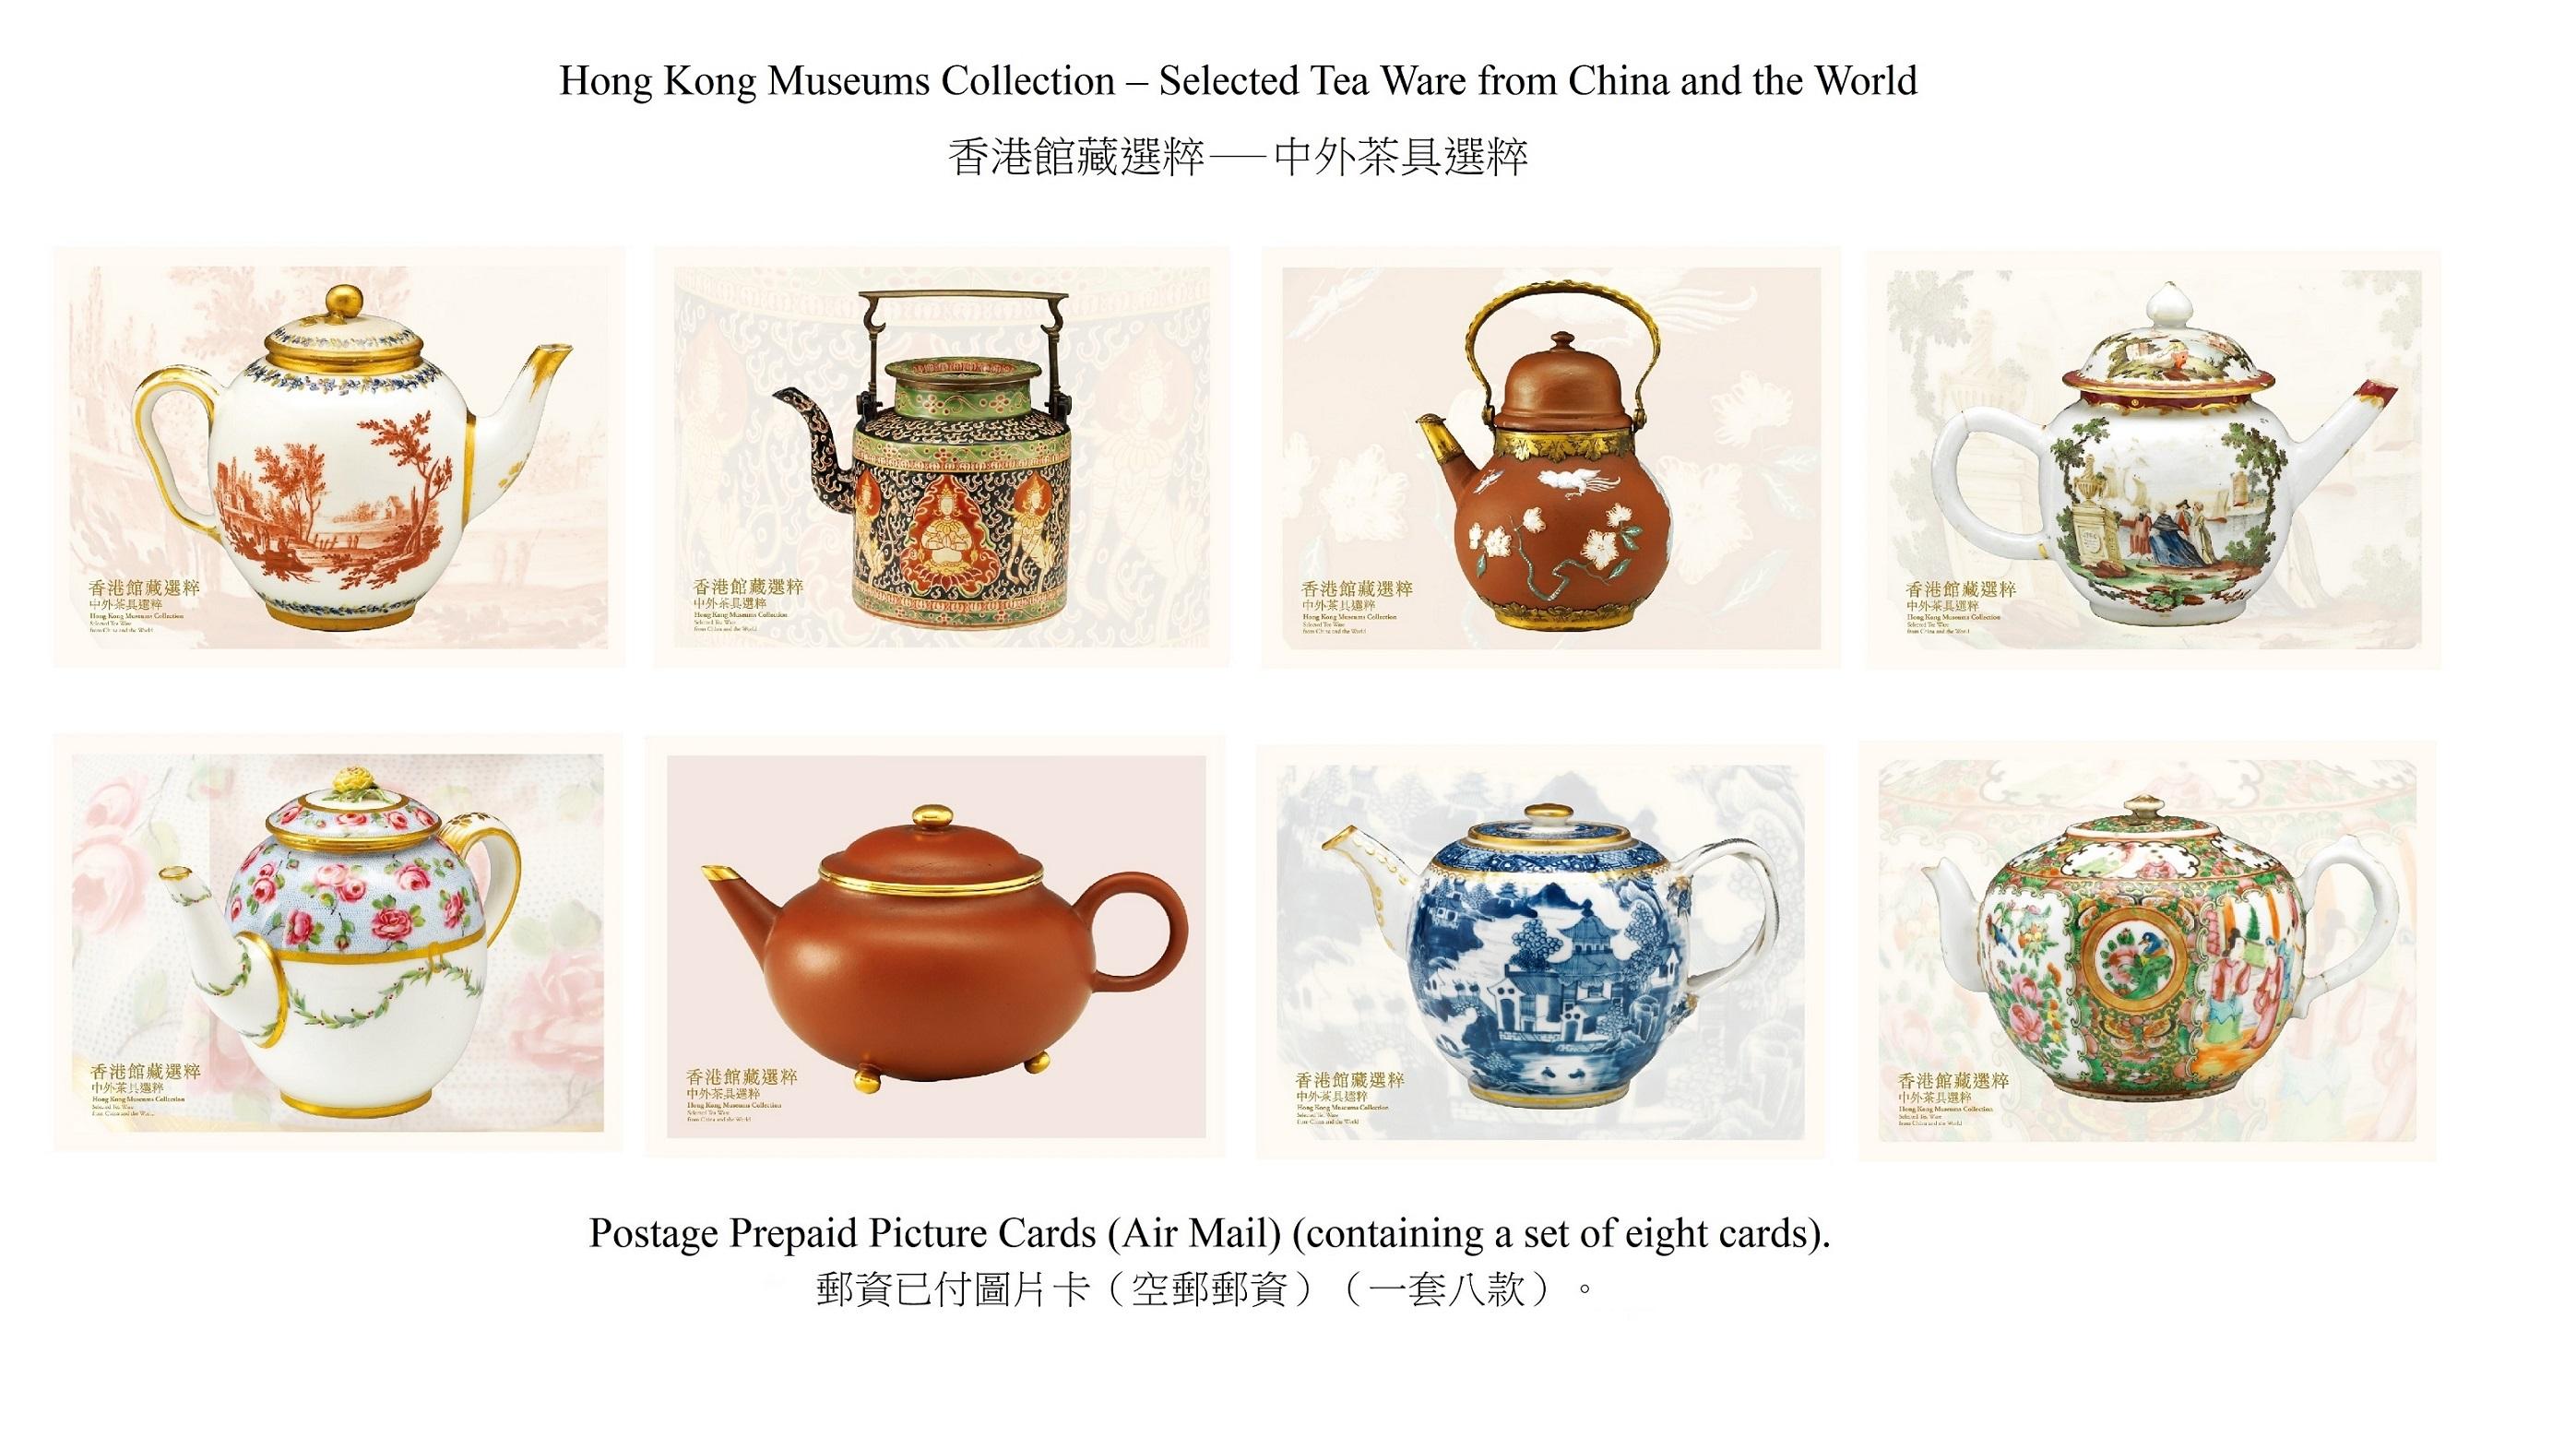 香港邮政四月十八日（星期四）发行以「香港馆藏选粹──中外茶具选粹」为题的特别邮票及相关集邮品。图示邮资已付图片卡（空邮邮资）。